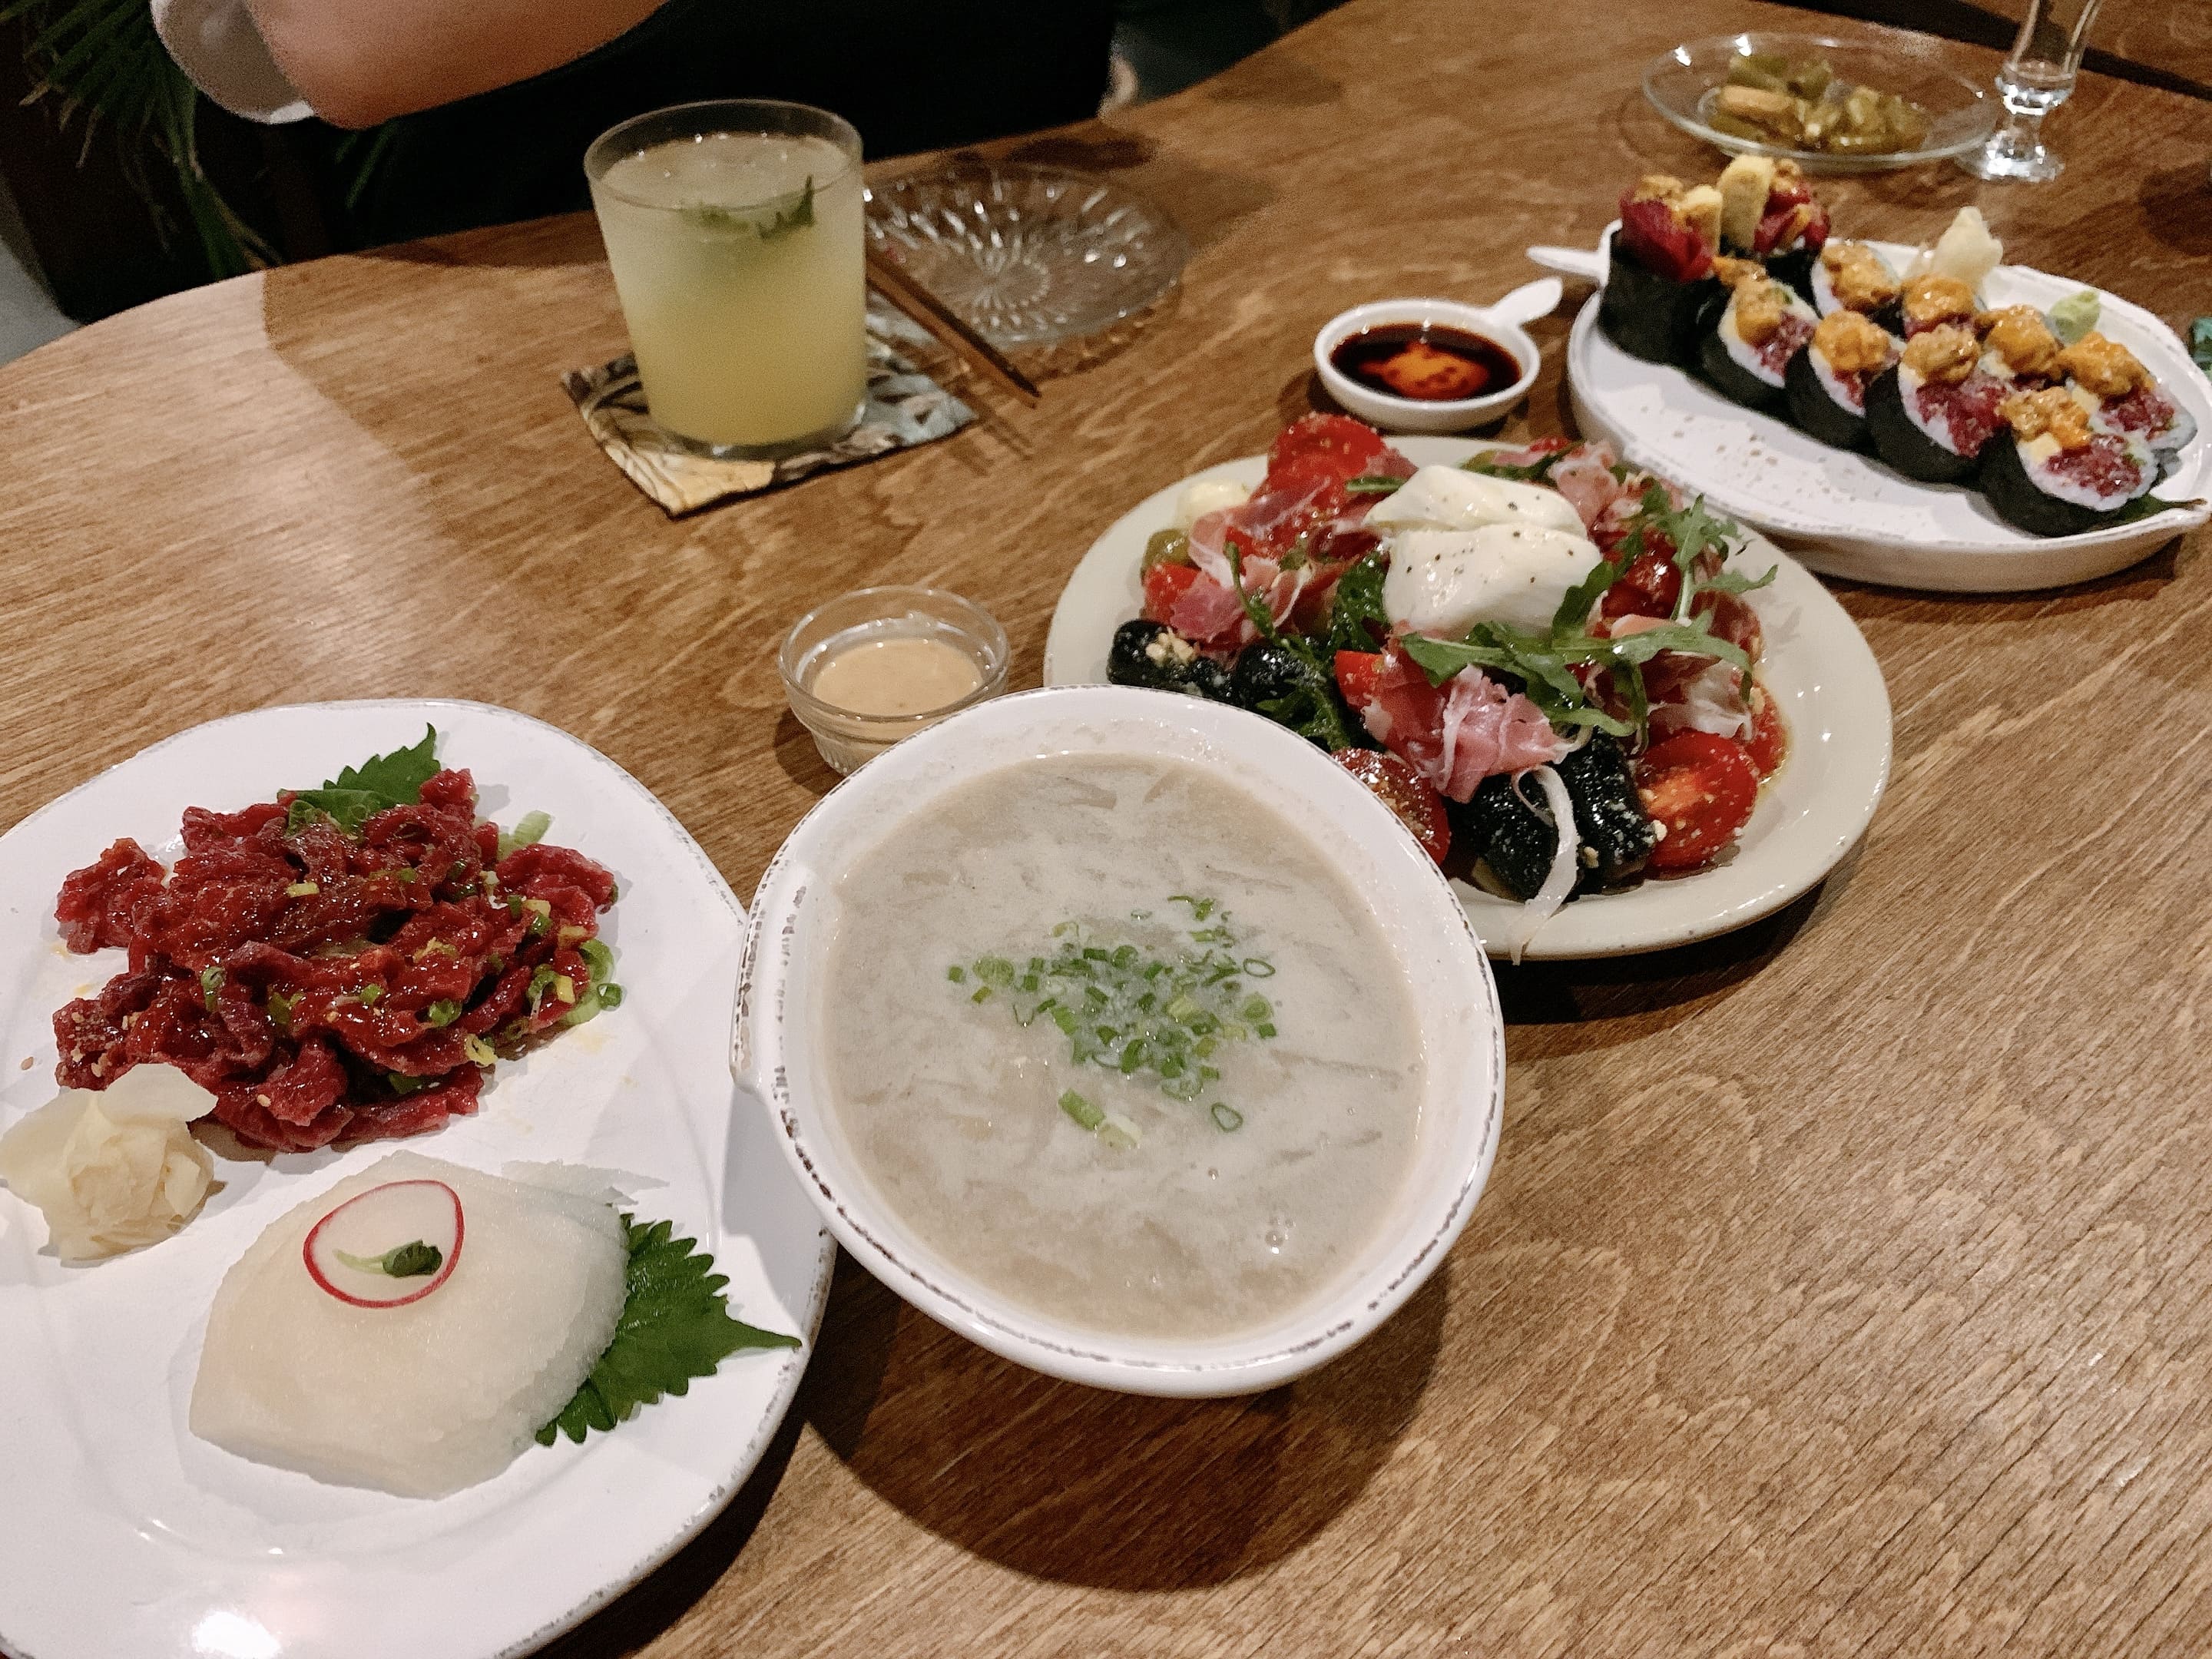 정대 말육회와 말국 부라타치즈 샐러드 그리고 생참치 김밥